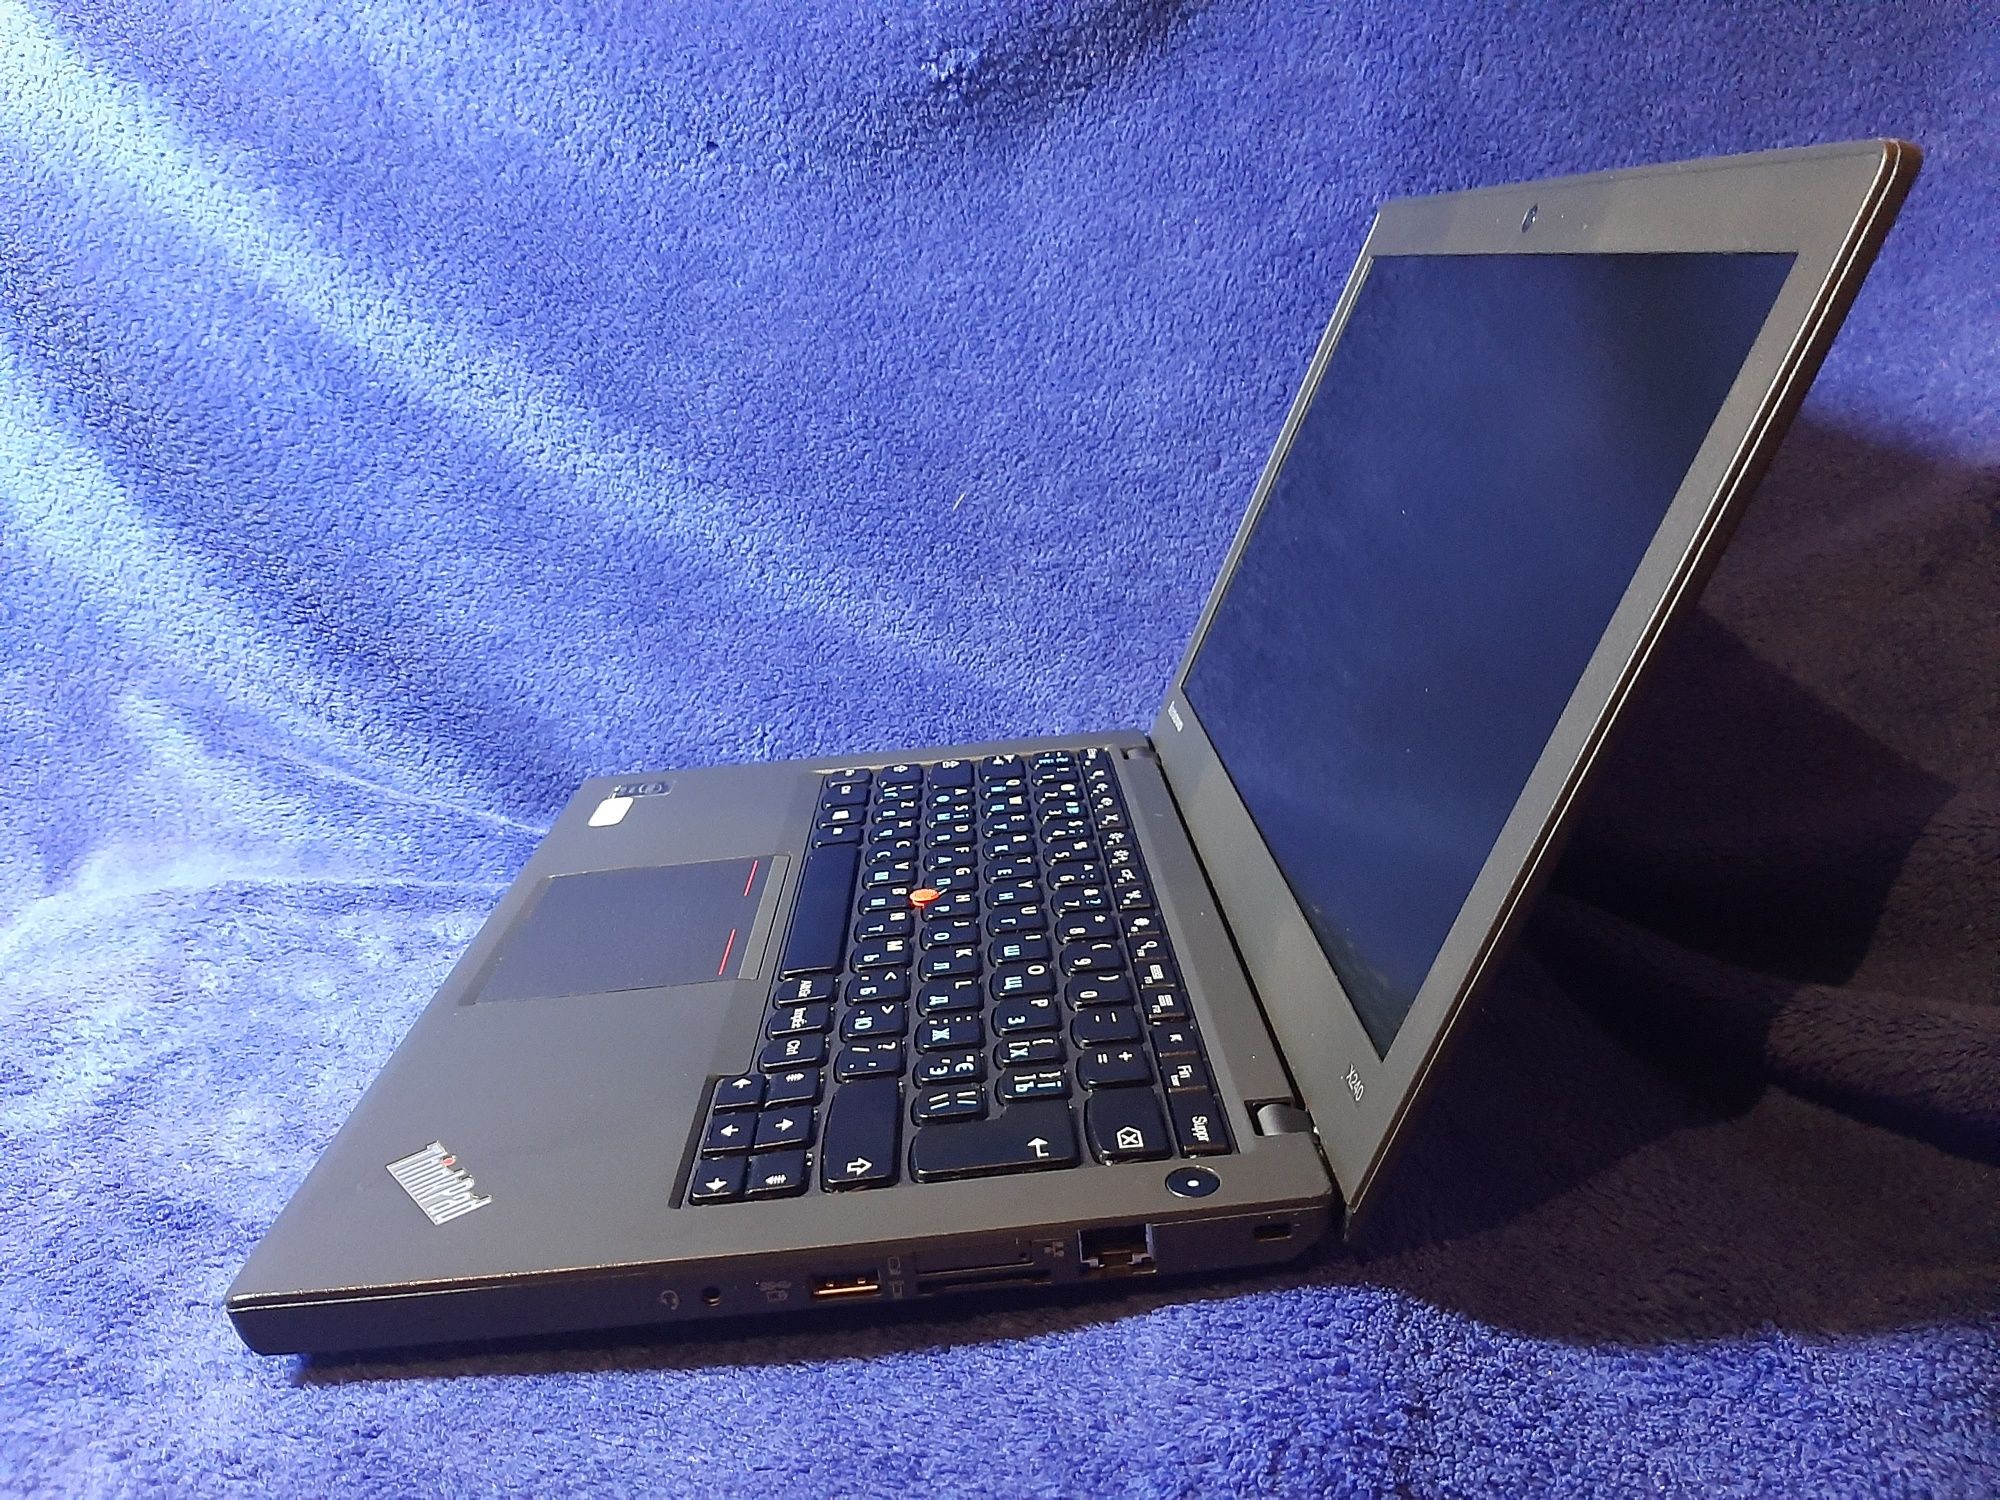 ThinkPad i5,8гб, Батарея 10ч,Гарантия!